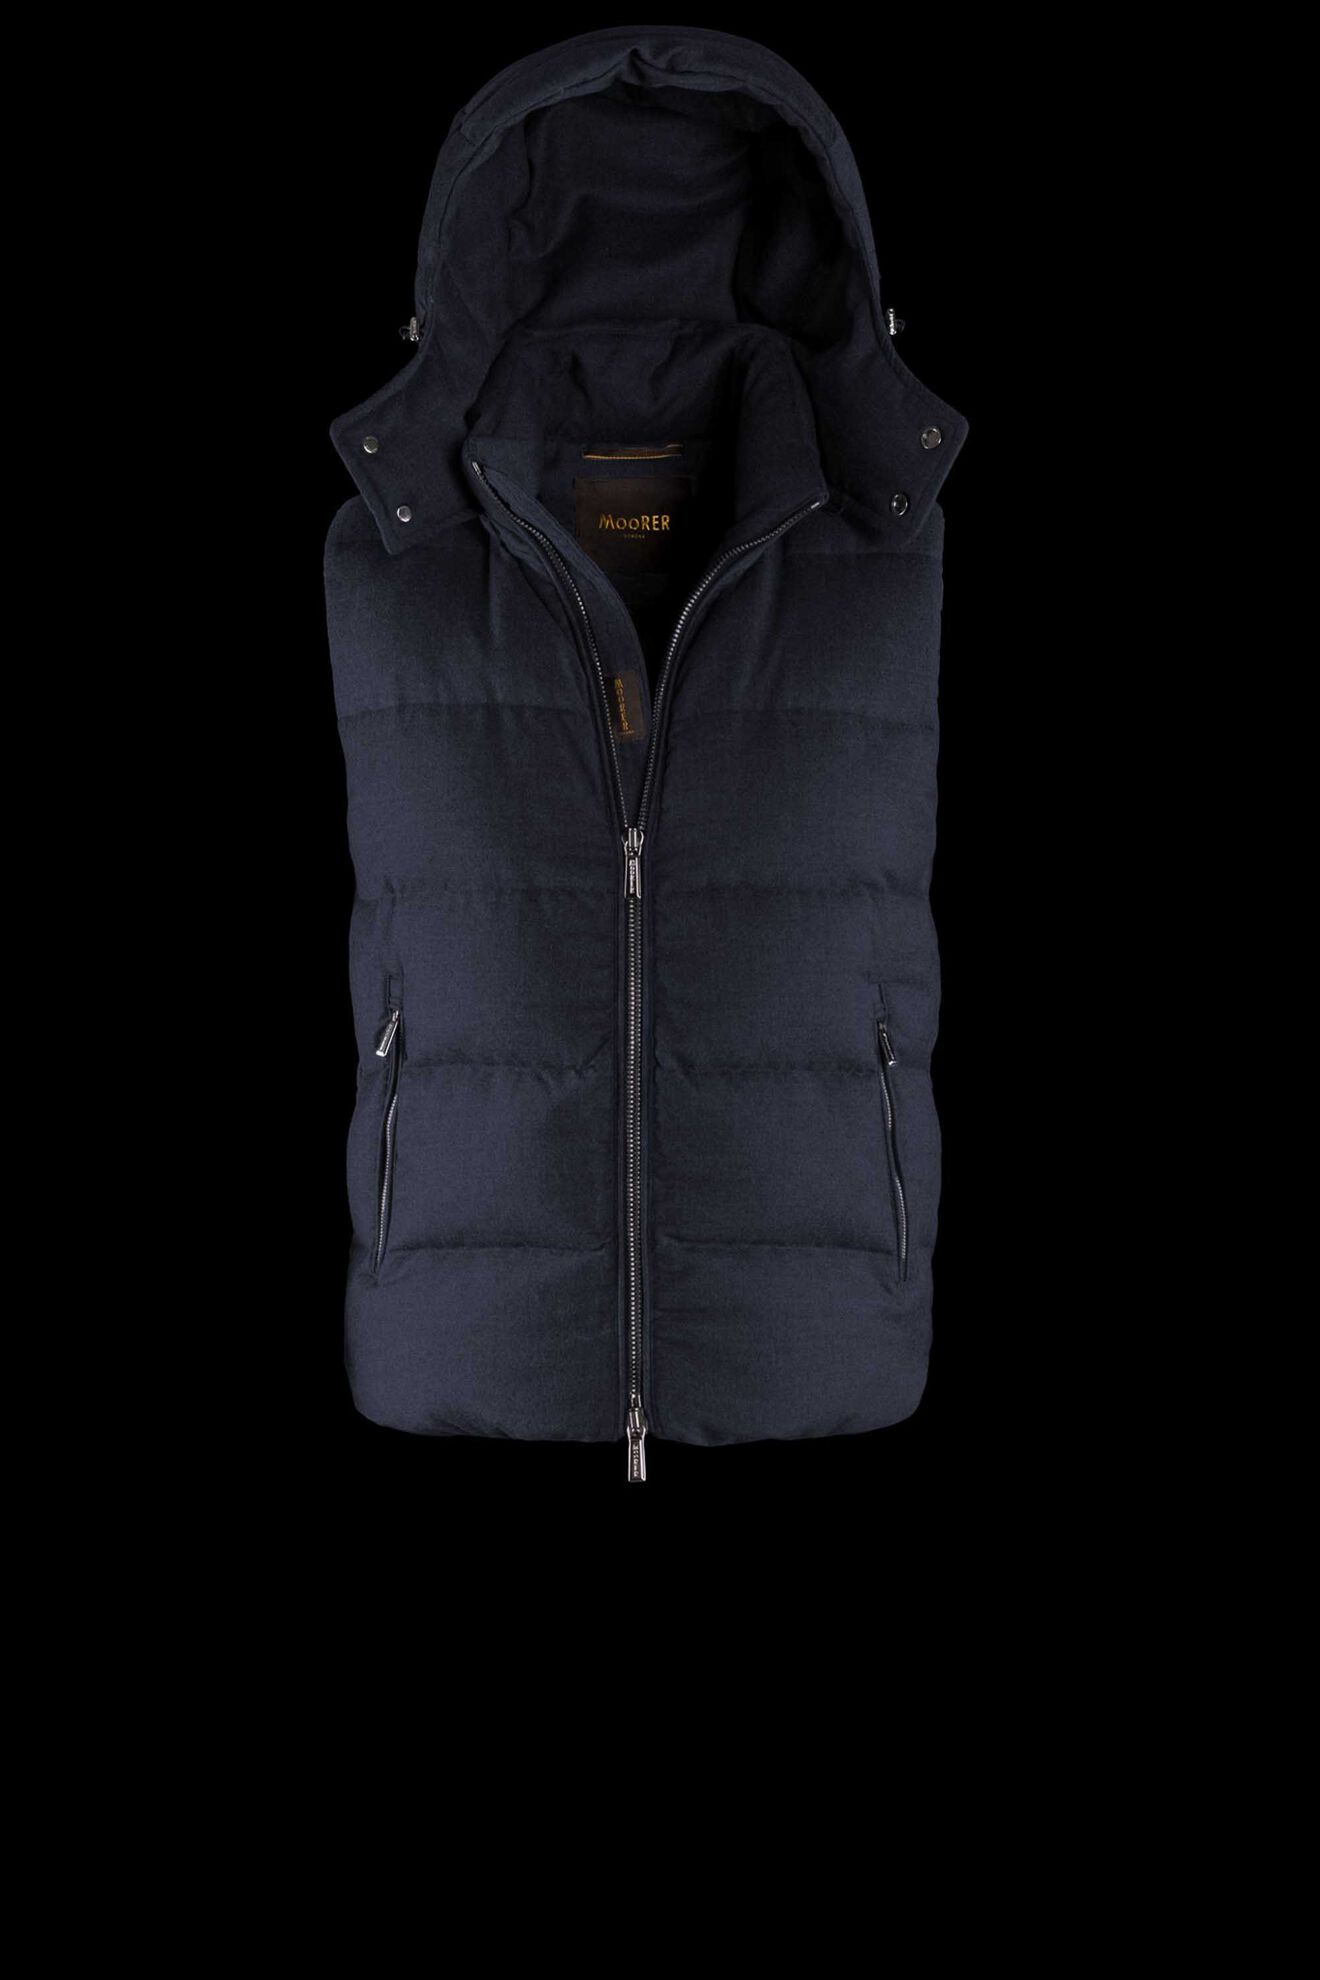 FIRE-L in BLUE: Luxury Italian Vests for Men | MooRER®